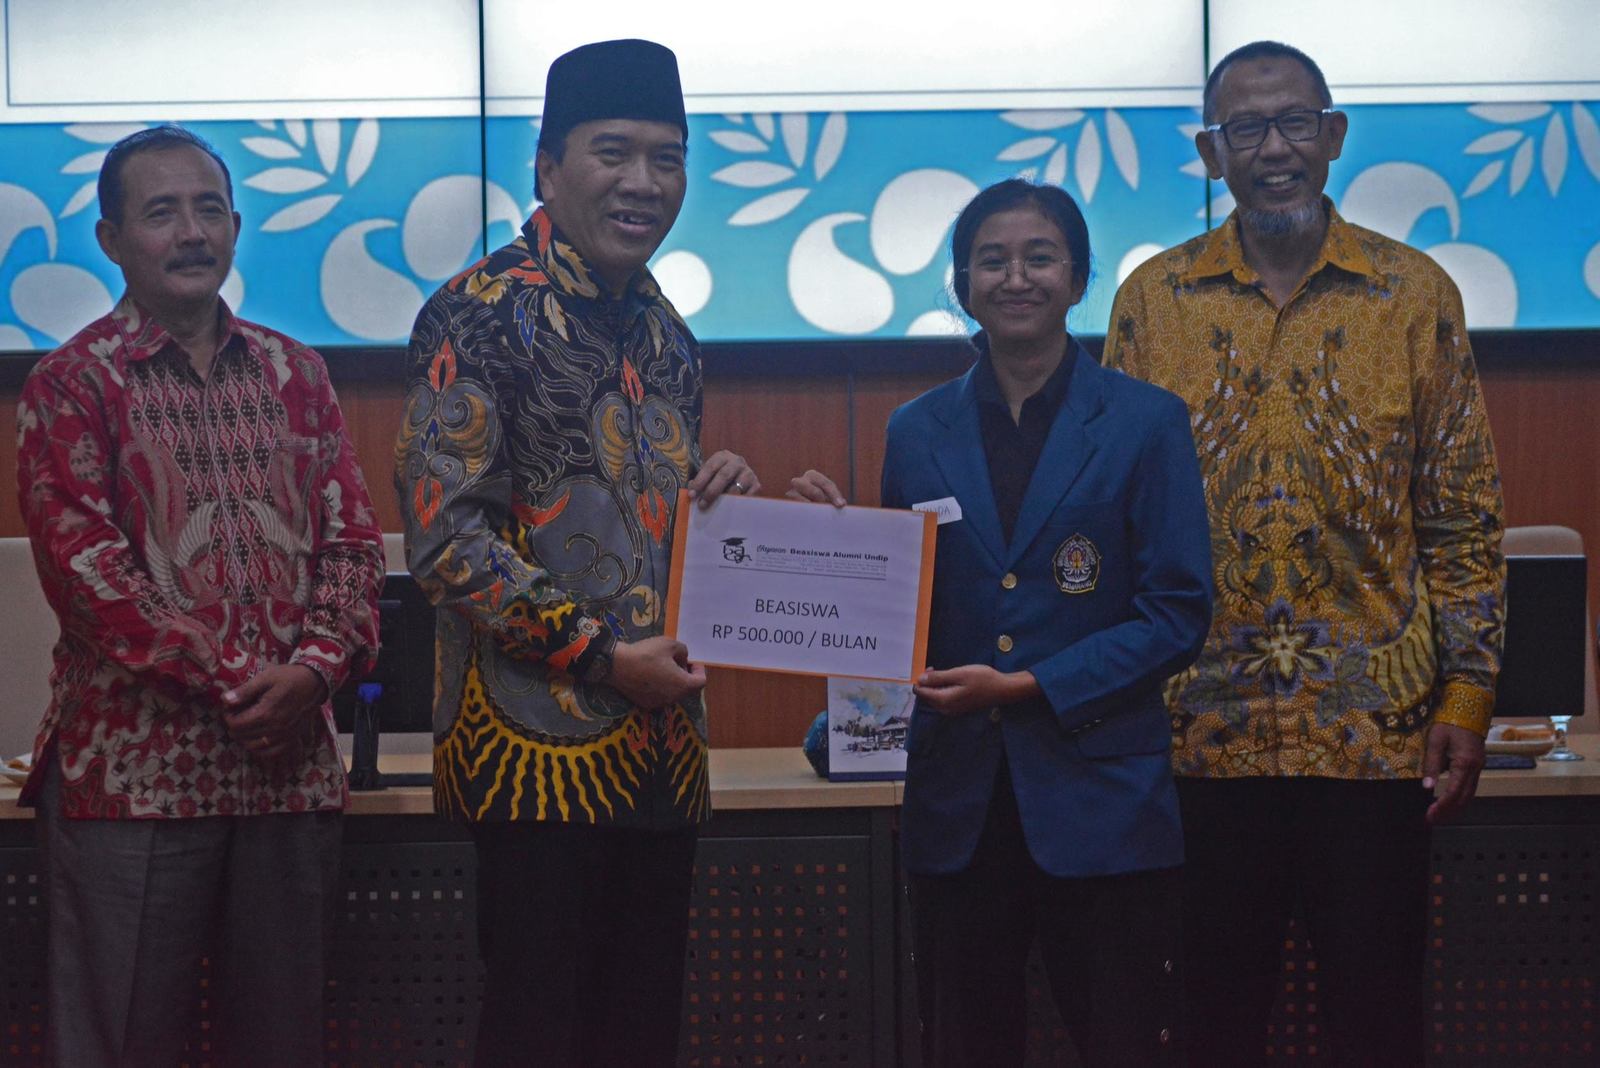 90 Mahasiswa Undip Terima Beasiswa Alumni Undip - Universitas Diponegoro